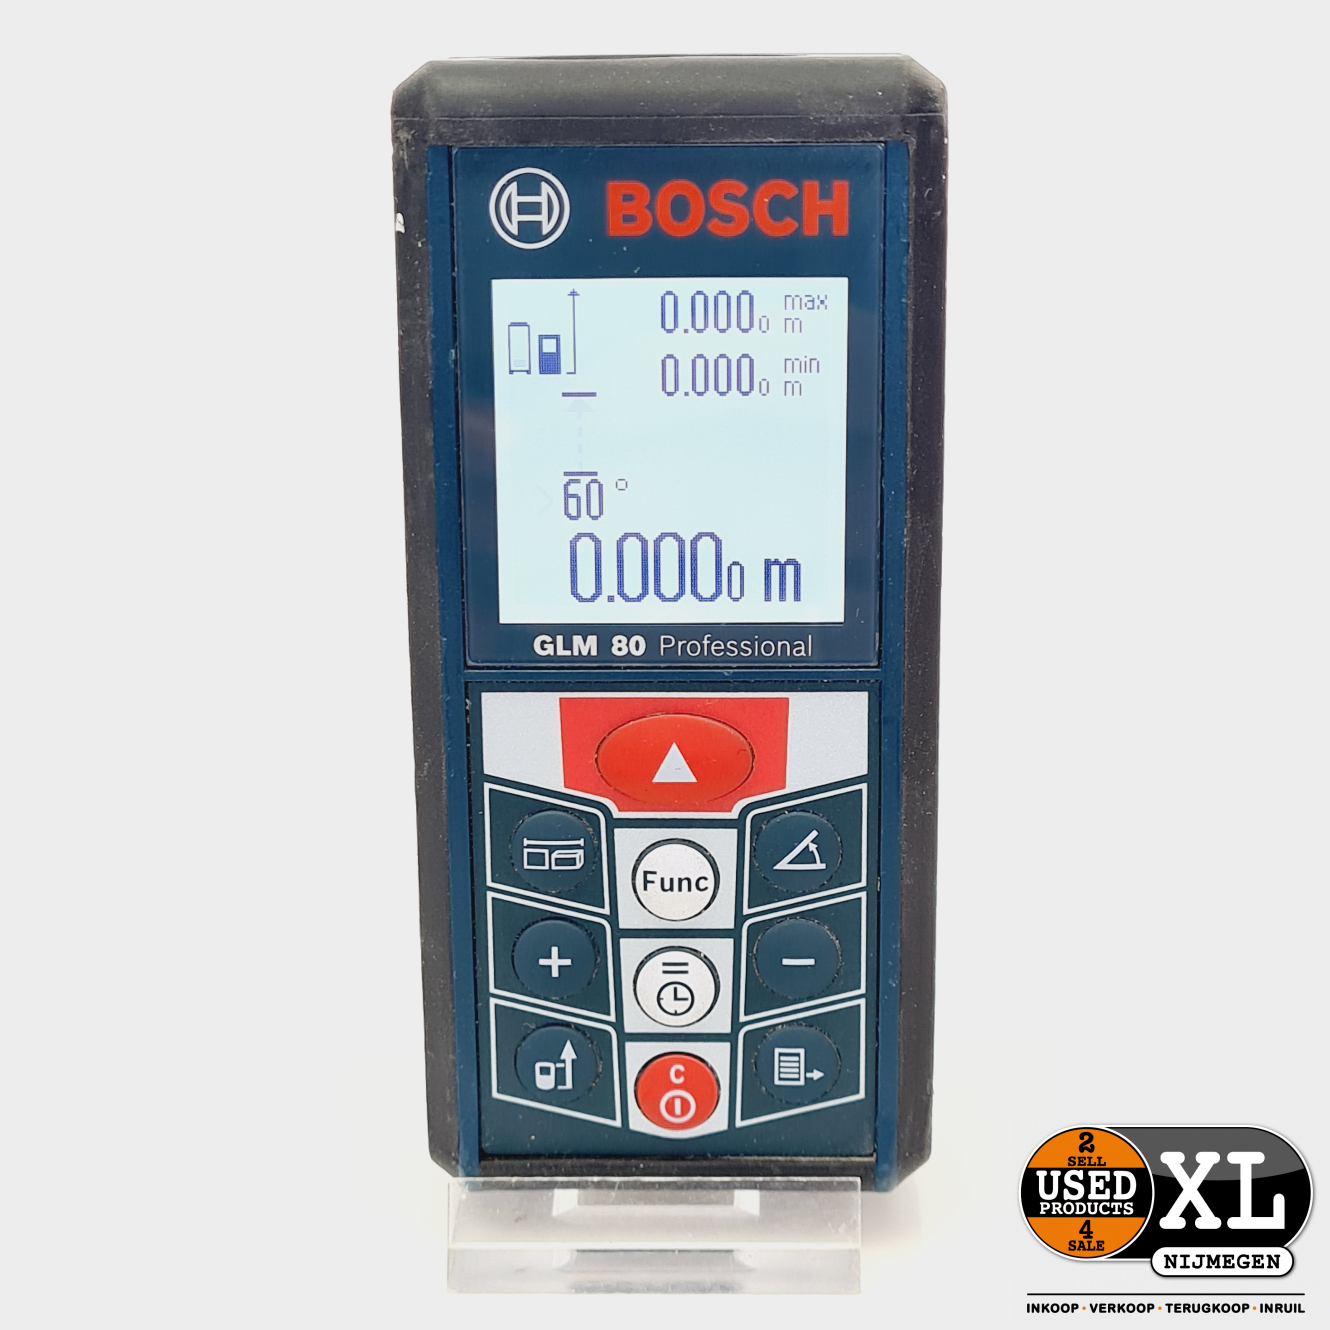 Bosch Professional GLM 80 Afstandsmeter tot Meter met Garantie - Used Products Nijmegen XL